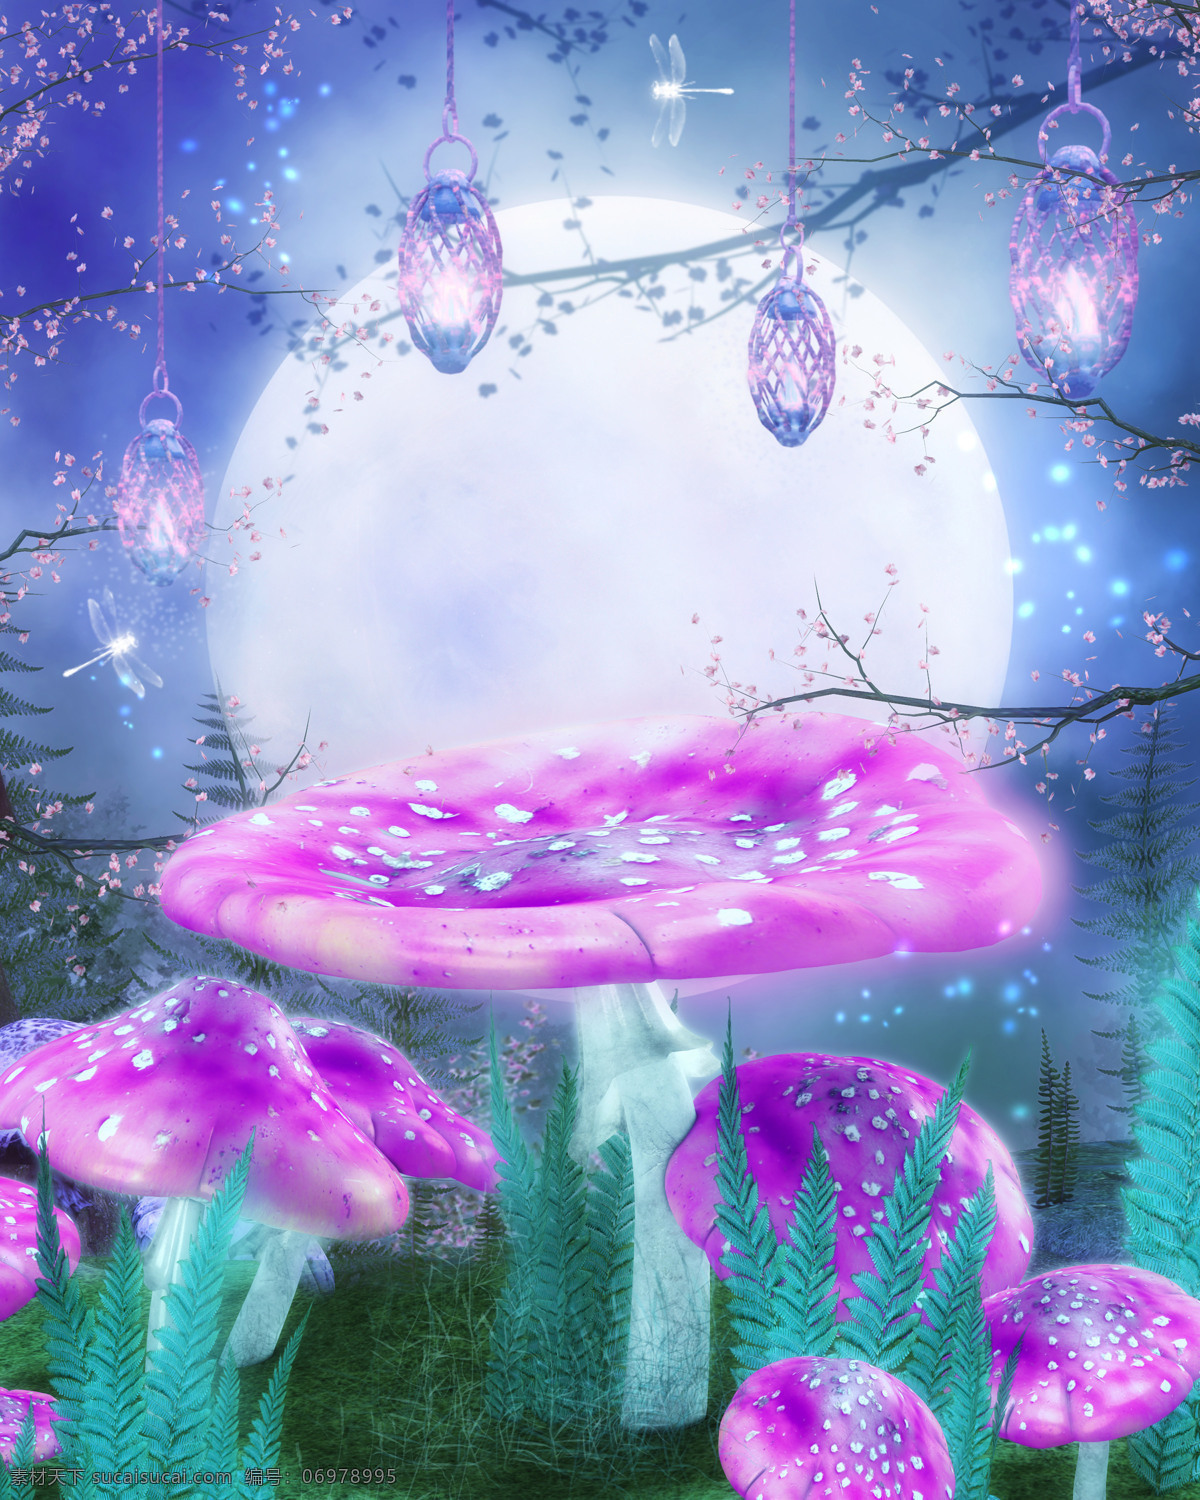 梦幻蘑菇 蘑菇 梦幻 影楼背景 影楼模板 浪漫背景 梦幻背景 动漫动画